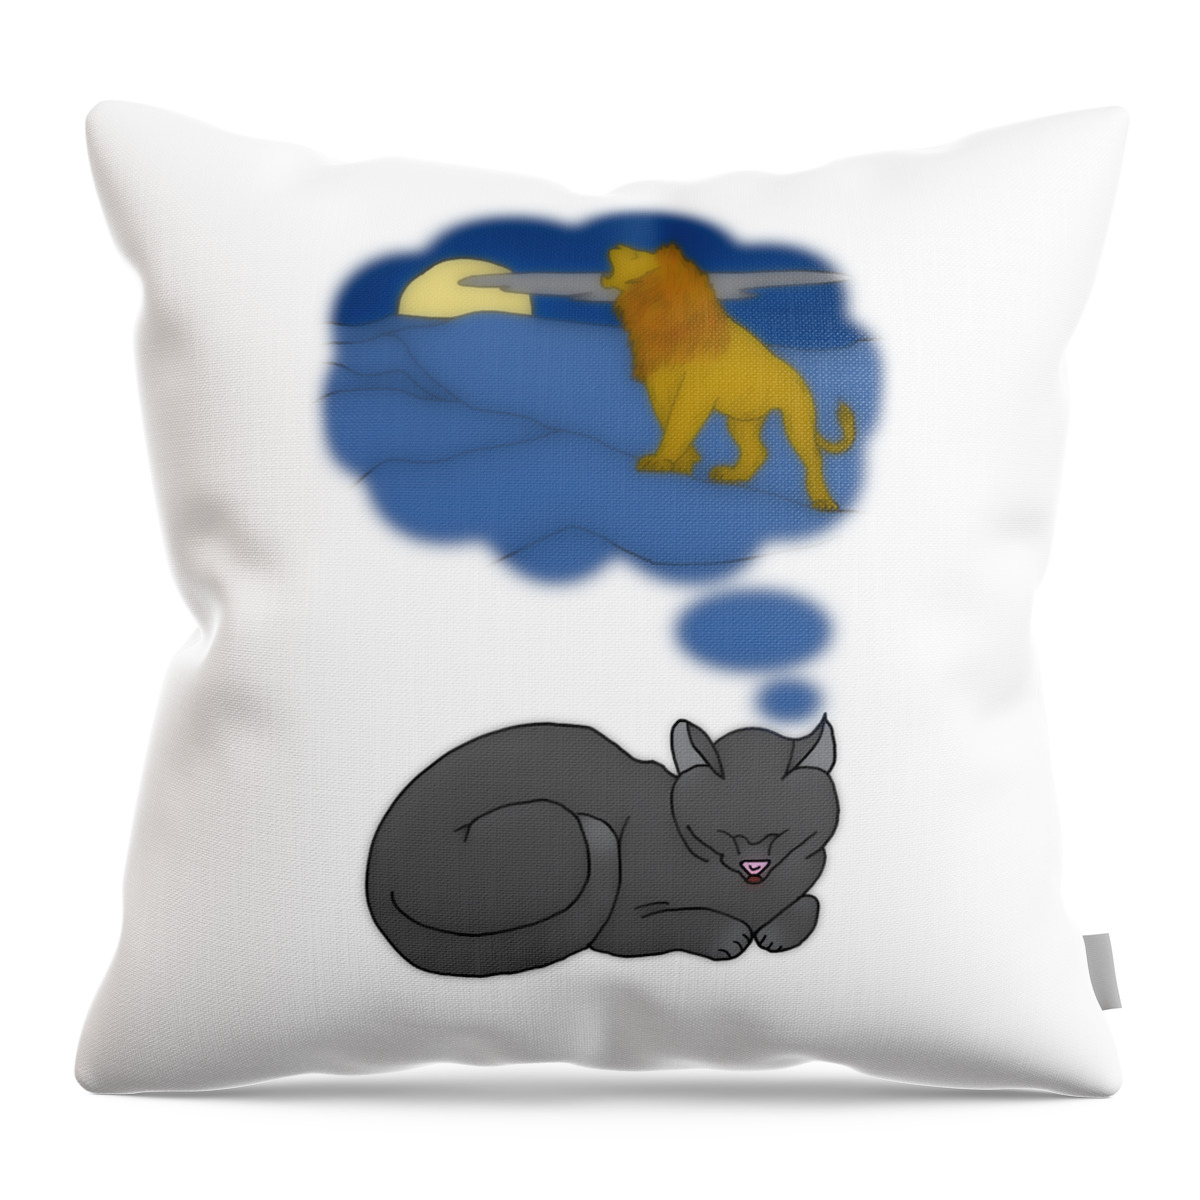 Cat Throw Pillow featuring the digital art When Cats Dream by John Haldane